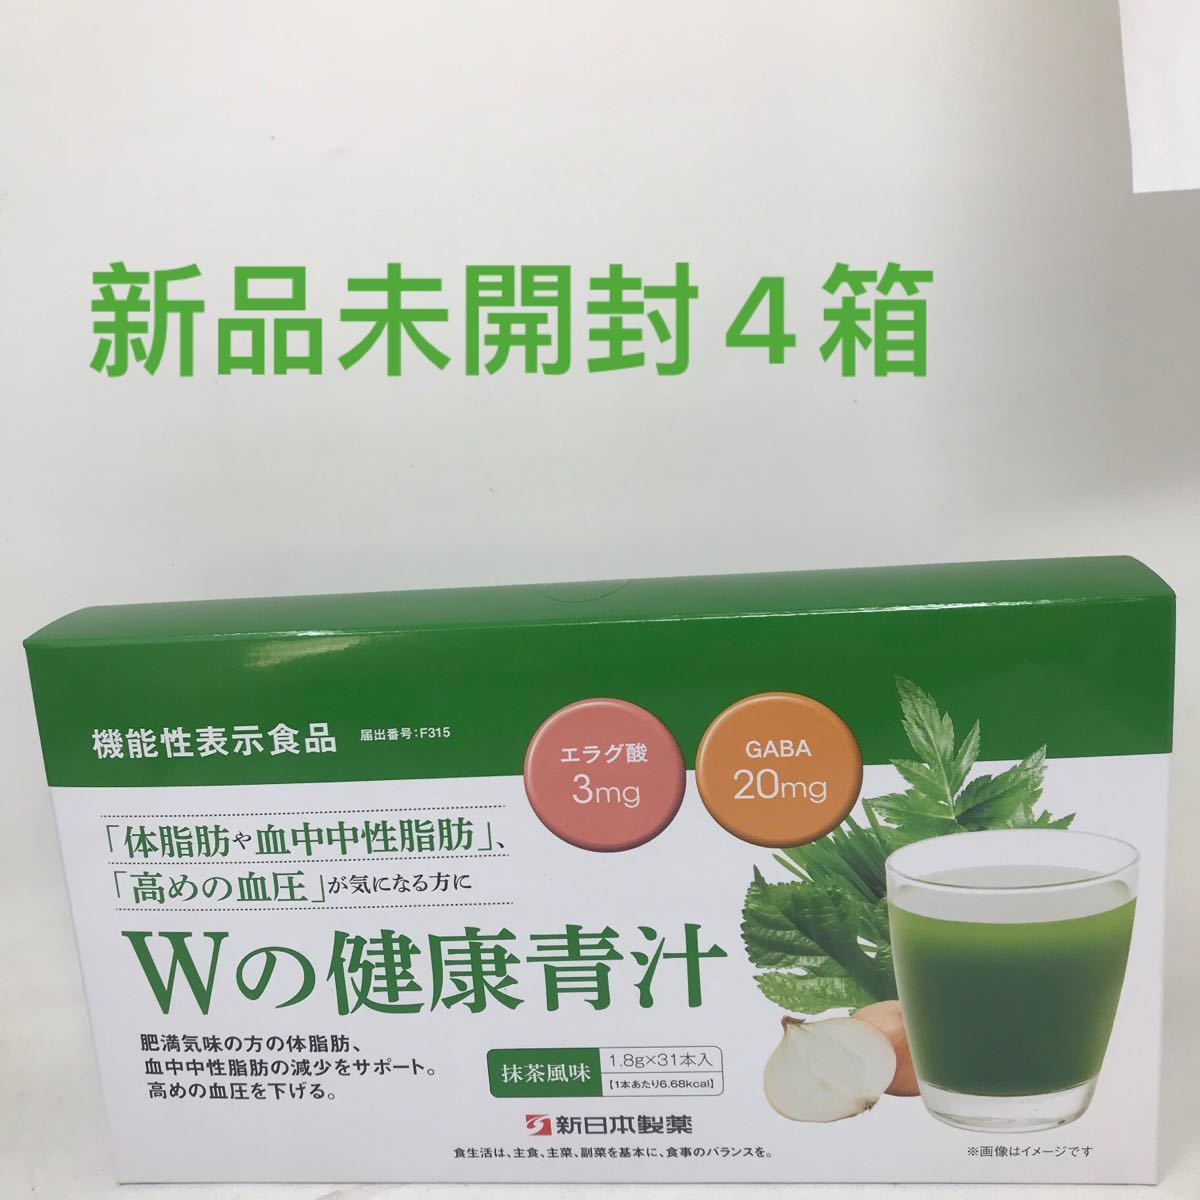 新日本製薬 生活習慣サポート Wの健康青汁 18g 31本 1箱